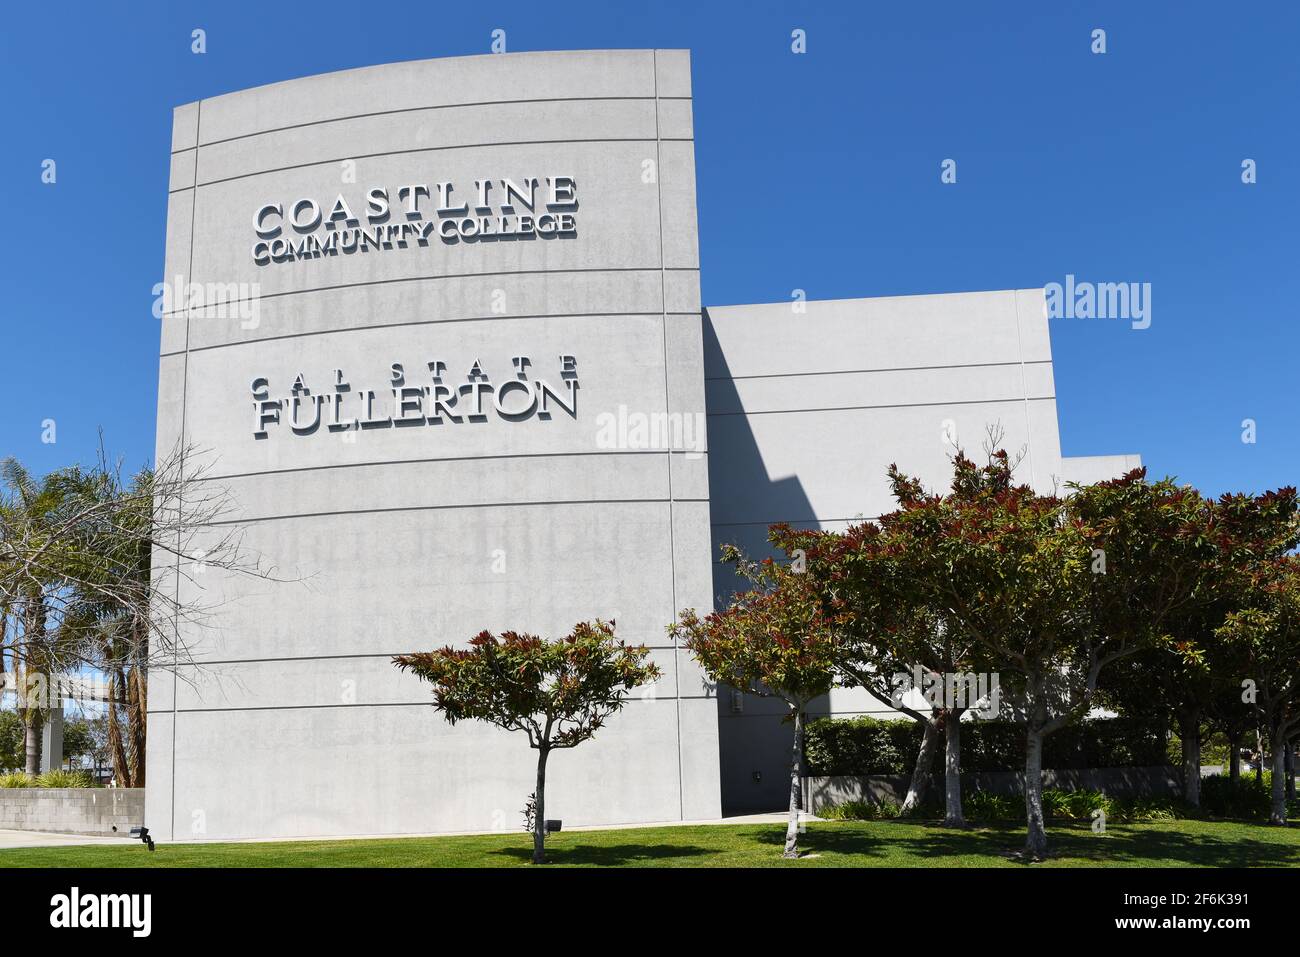 GARDEN GROVE, KALIFORNIEN - 31. MÄRZ 2021: Das Coastline Community College ist Teil des California Community College Systems. Stockfoto